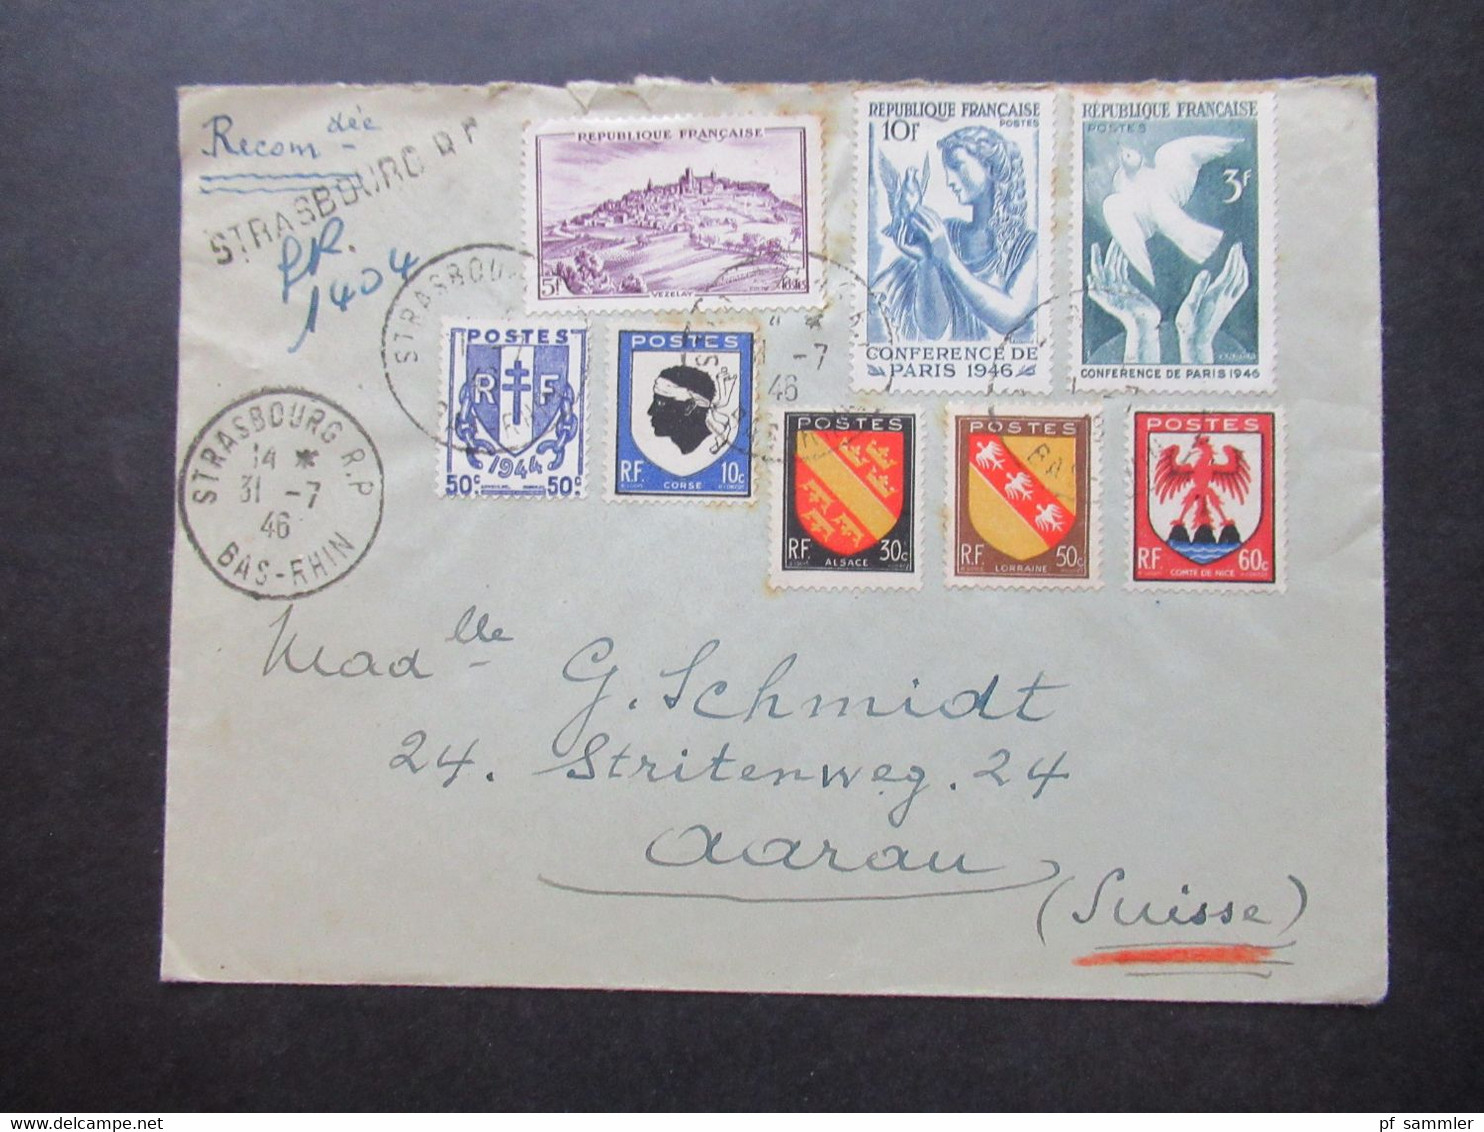 Frankreich 1946 MiF Einschreiben Reco Strasbourg R.P. Nach Aarau Schweiz Mit Ank. Stempel Aarau 1 Briefe - Covers & Documents